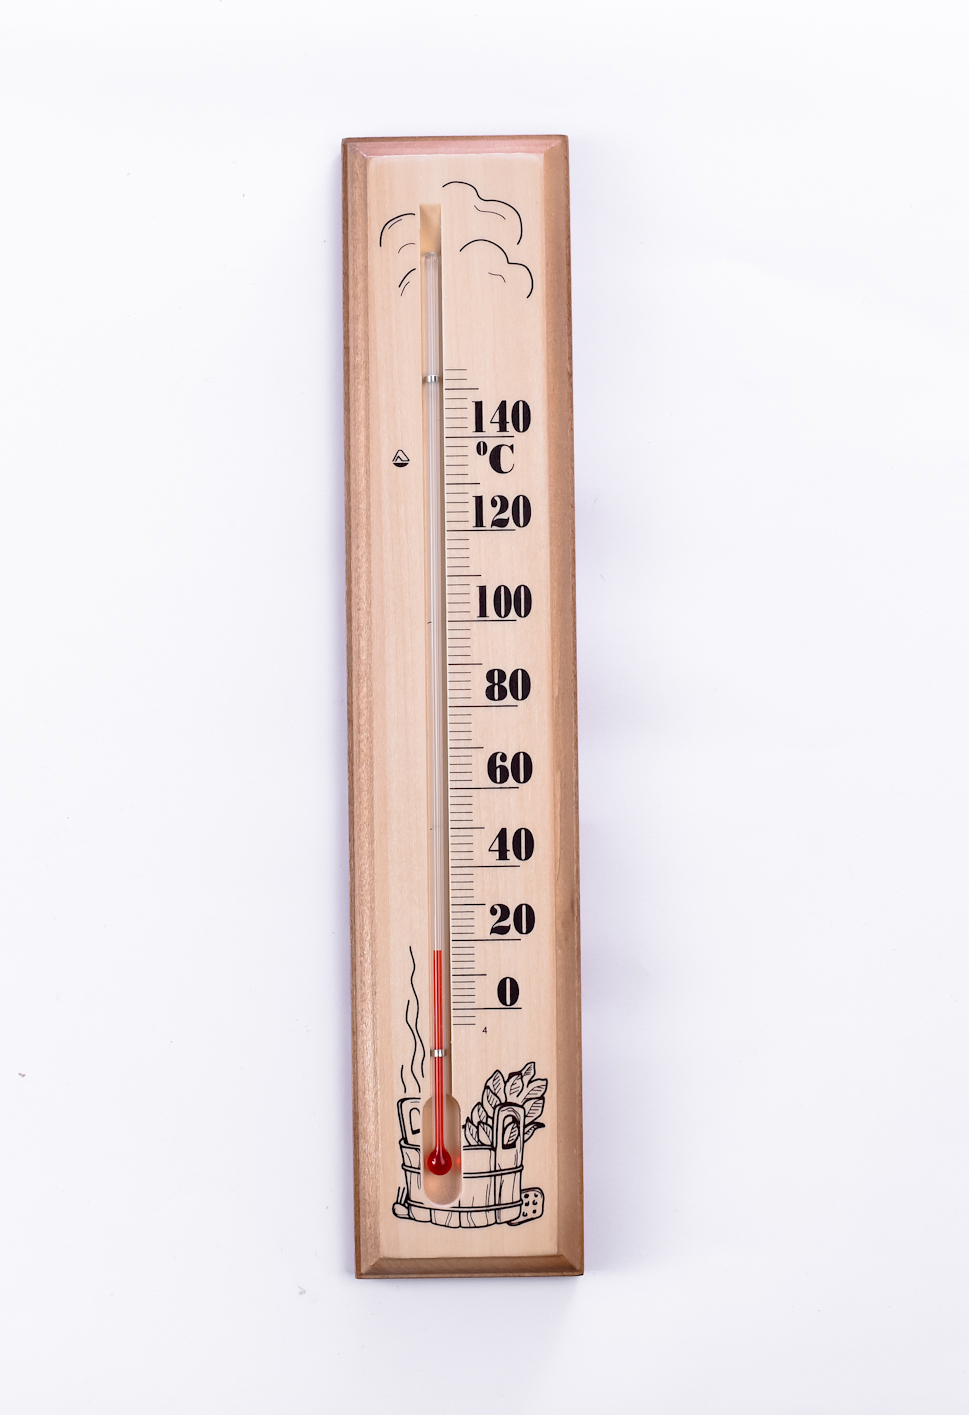 Контрольно-измерительные приборы для бани и сауны: термометр, барометр, таймер, гигрометр